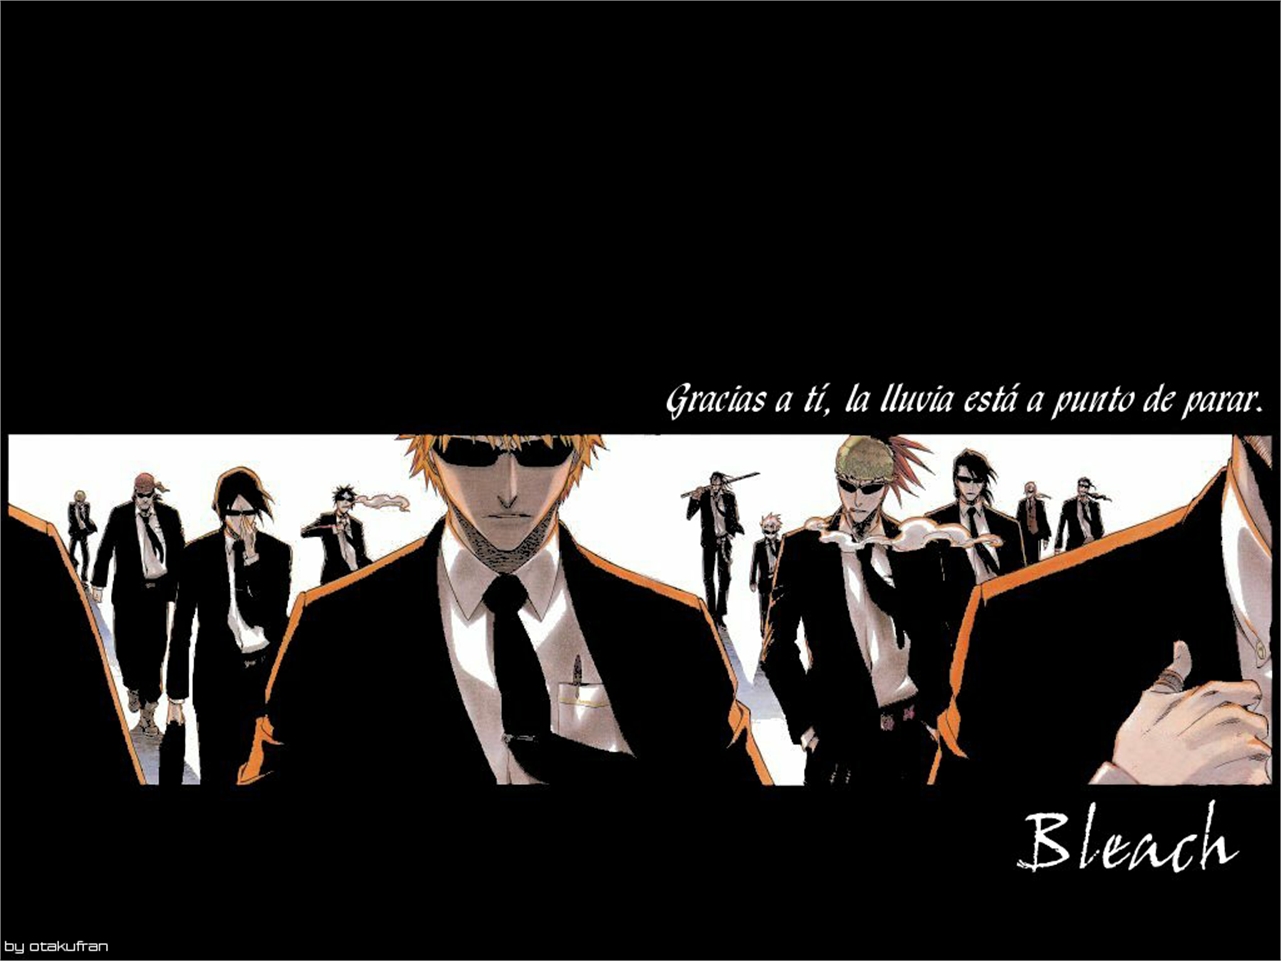 Free download wallpaper Anime, Bleach, Renji Abarai, Ichigo Kurosaki, Uryu Ishida on your PC desktop